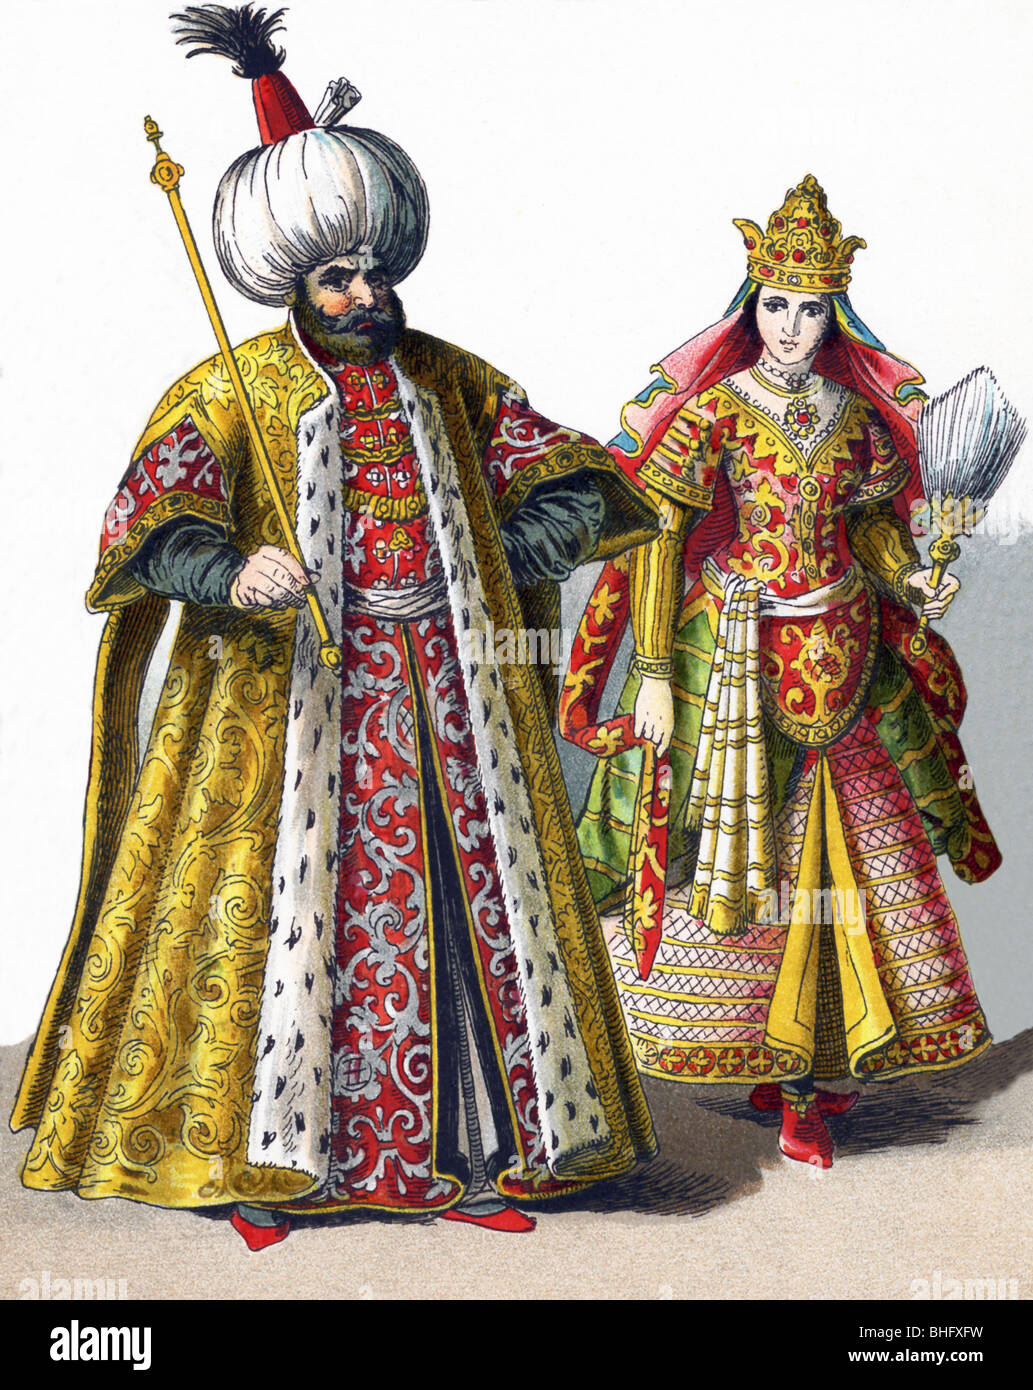 Queste cifre rappresentano un sultano e un Sultana nell'impero ottomano nel 1500. Foto Stock